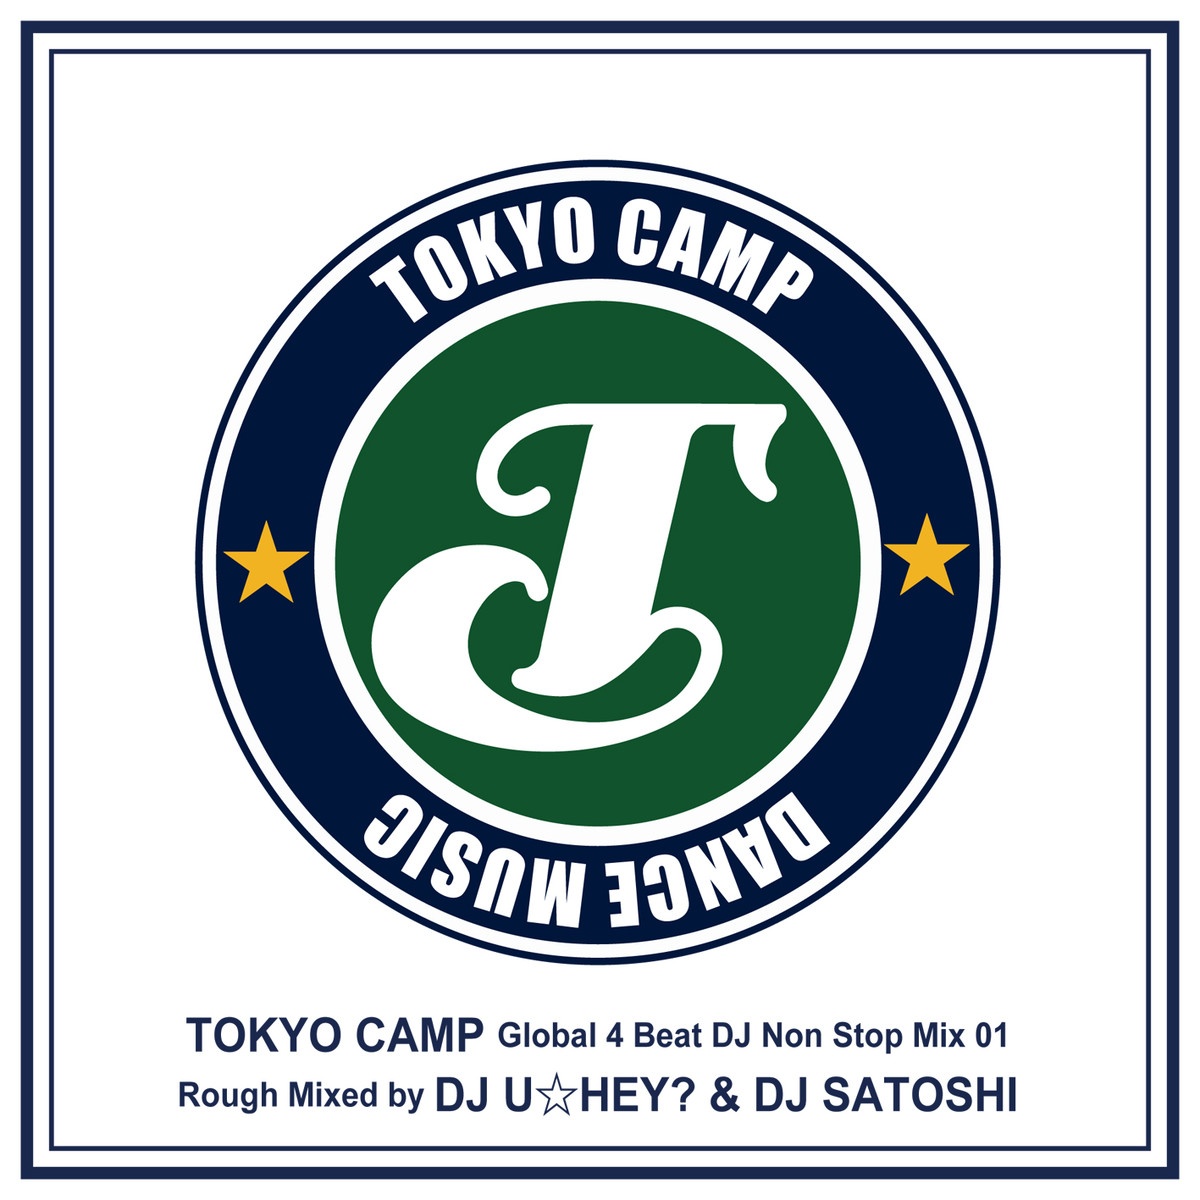 TOKYO CAMP Global 4 beat Non Stop Mix01 Rough Mixed by DJ U HEY?  DJ SATOSHI